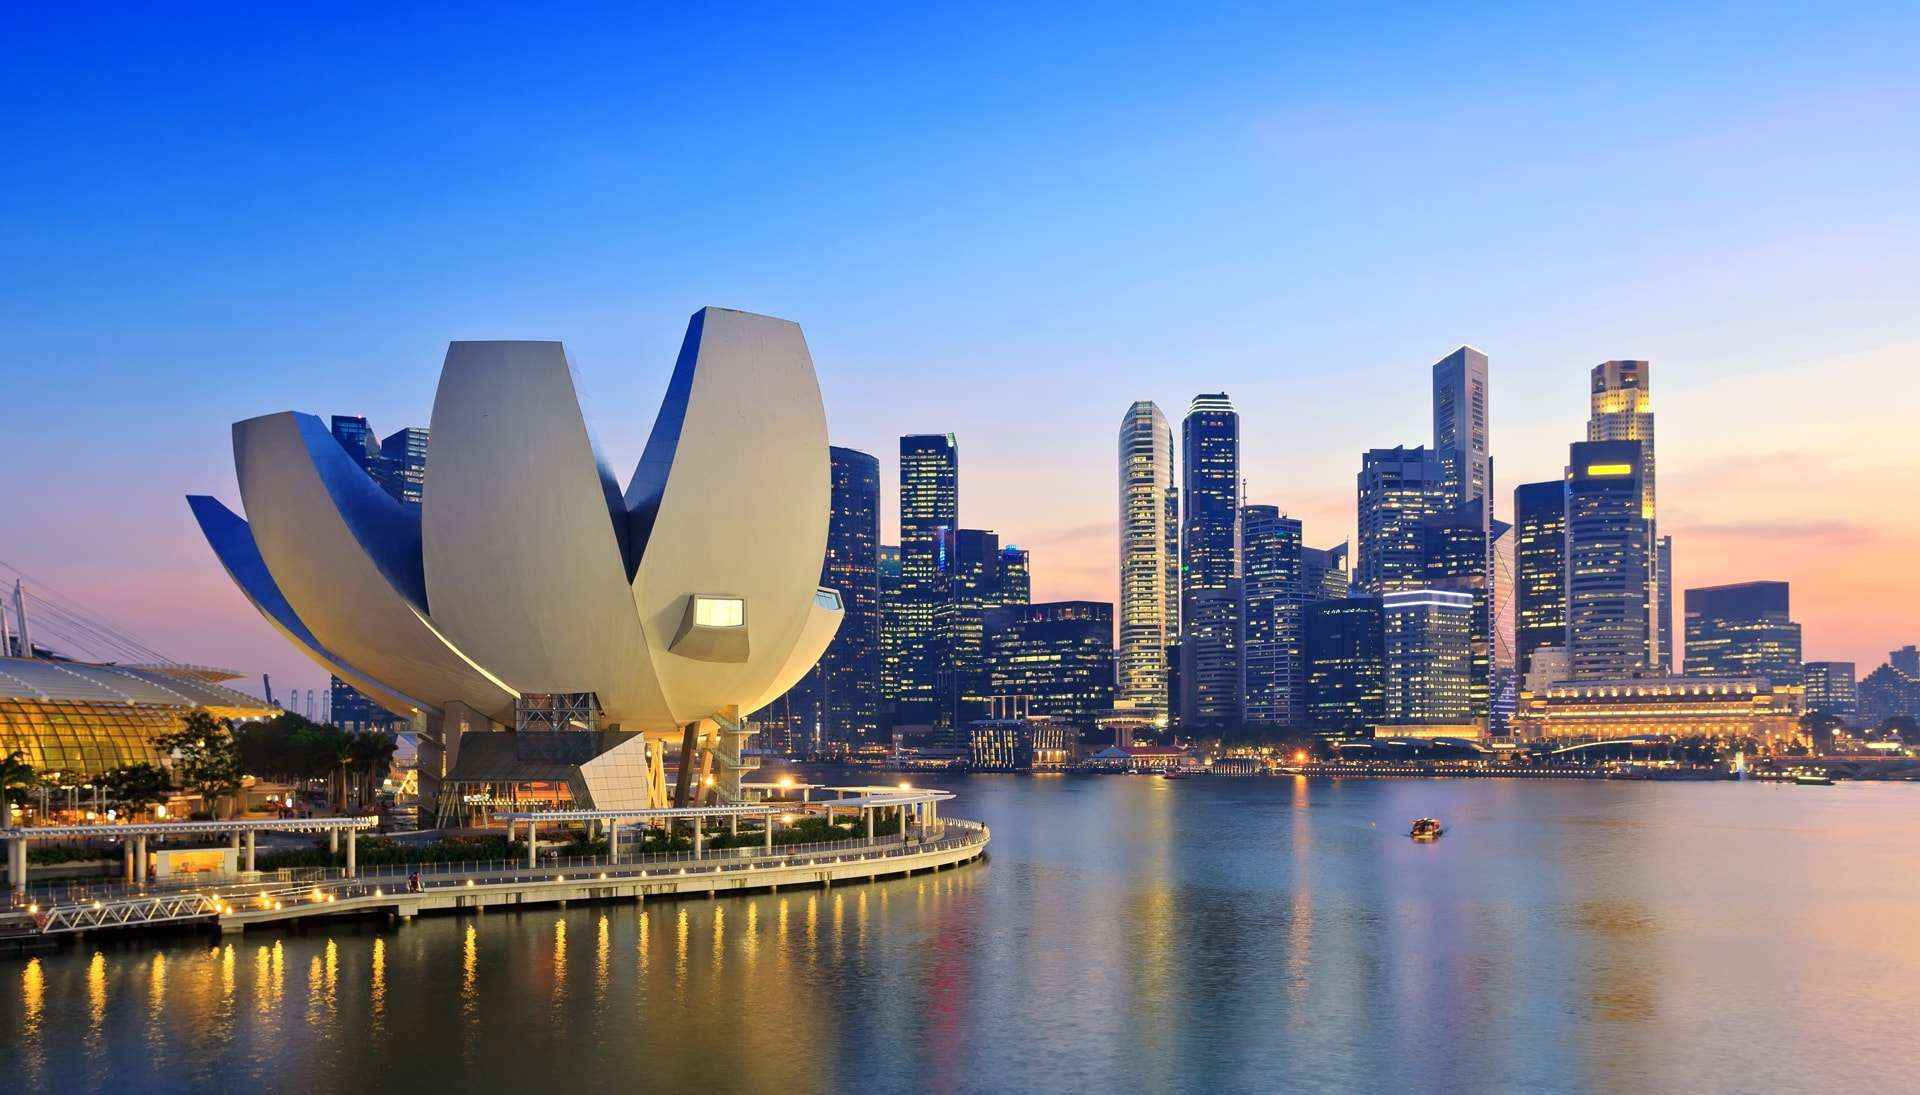 Tour du lịch nước ngoài giá rẻ không thể bỏ qua Singapore